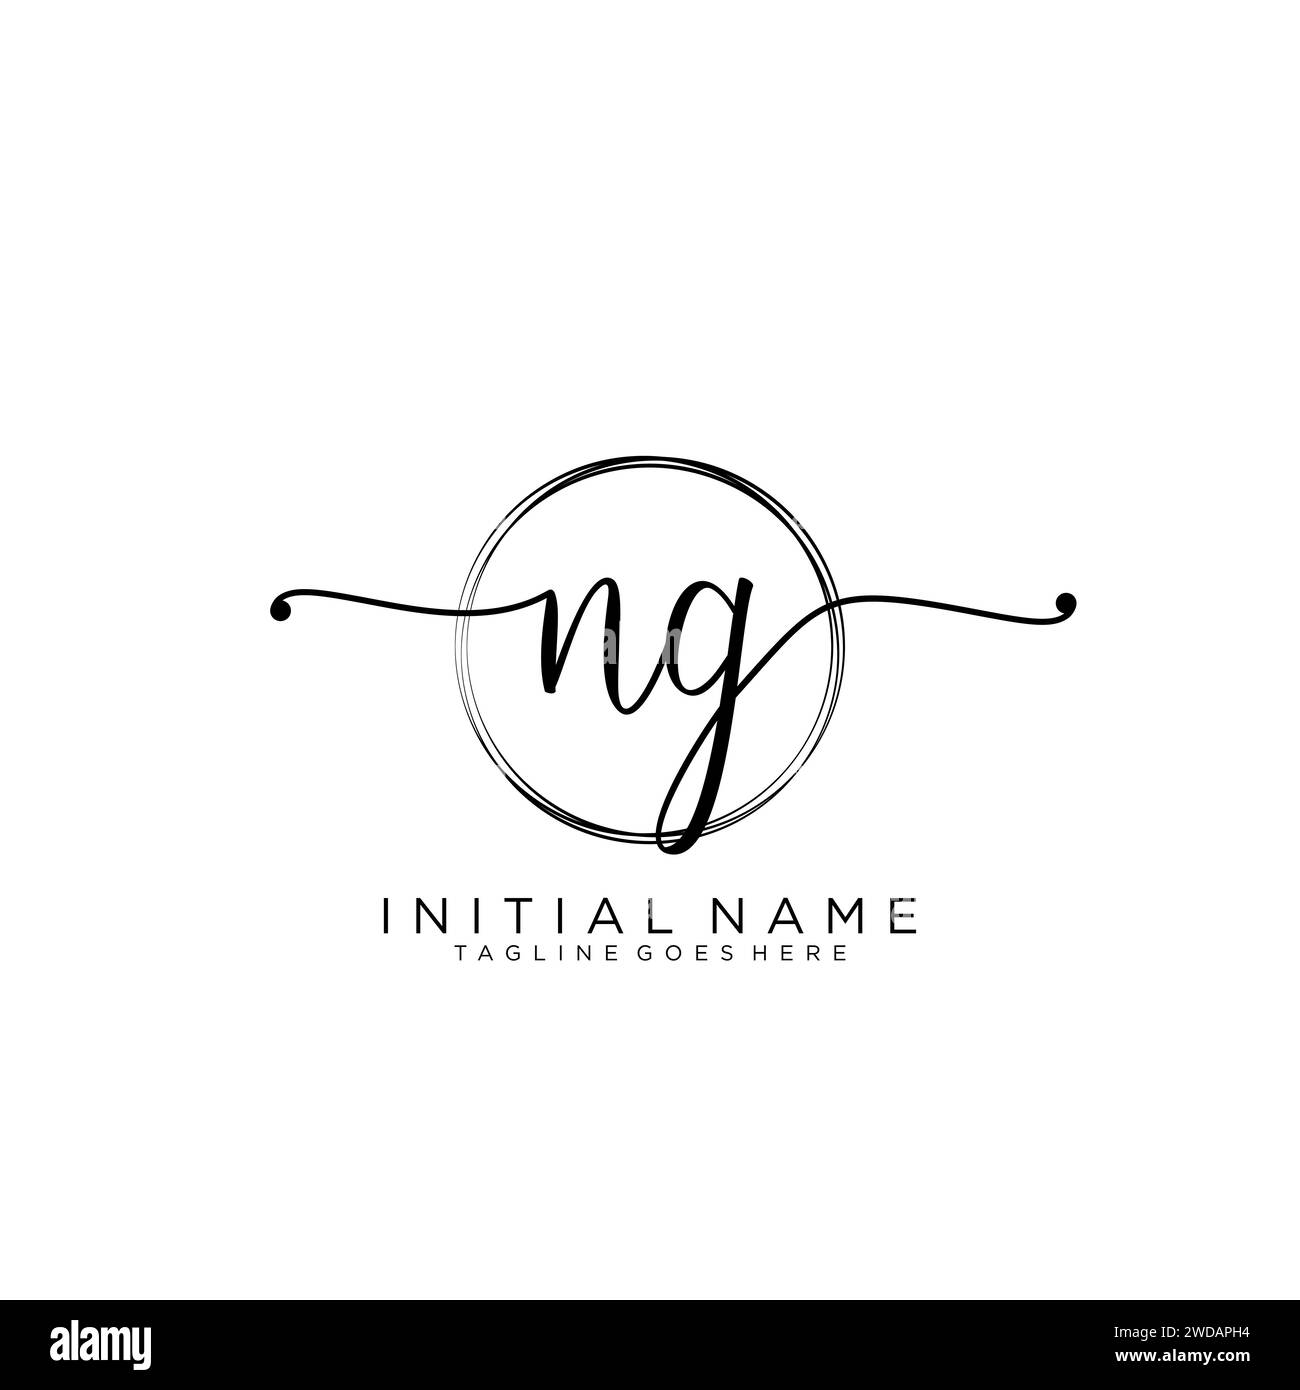 NG Initial handwriting logo with circle Stock Vector